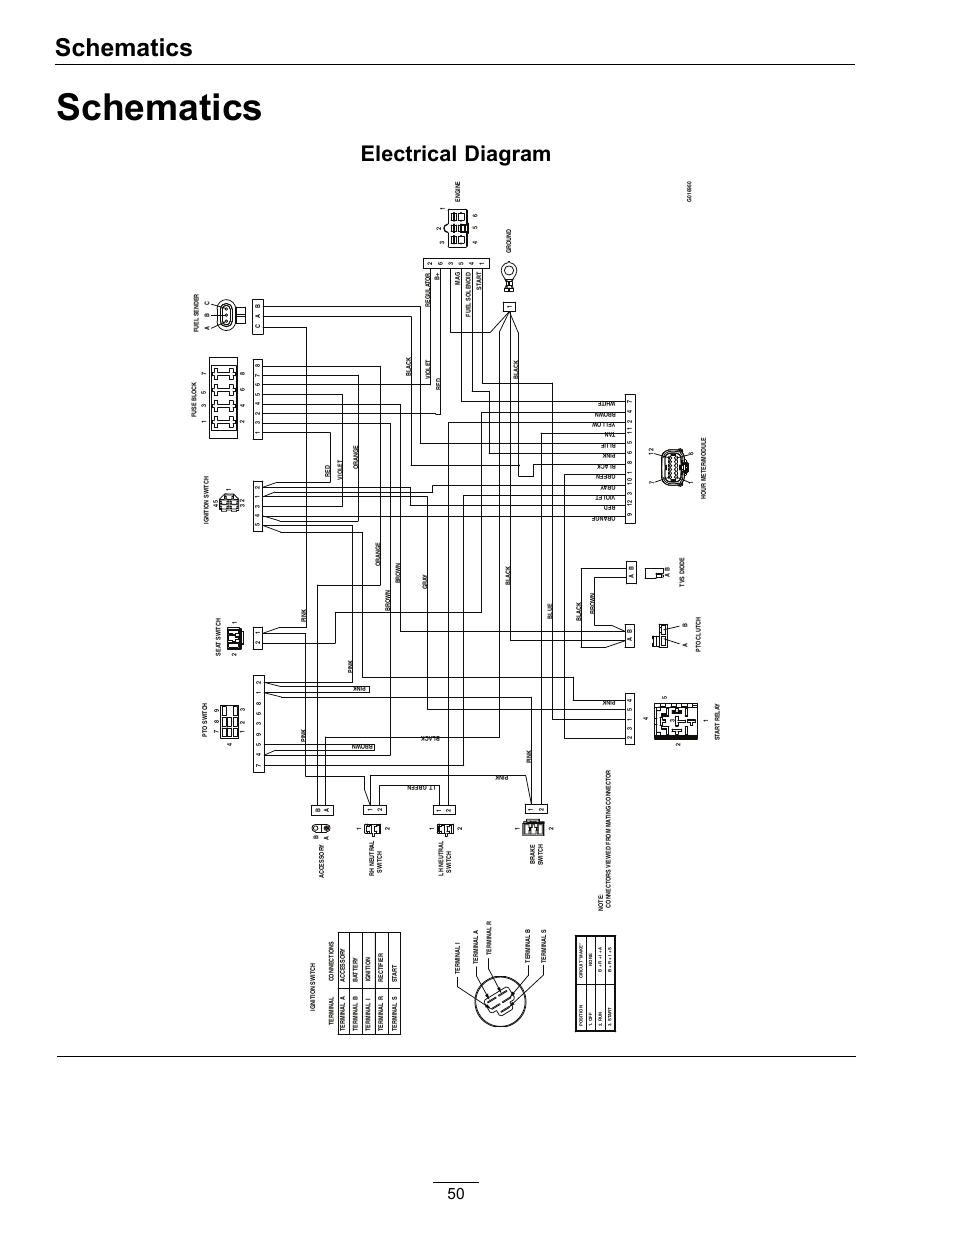 esquire wiring diagram